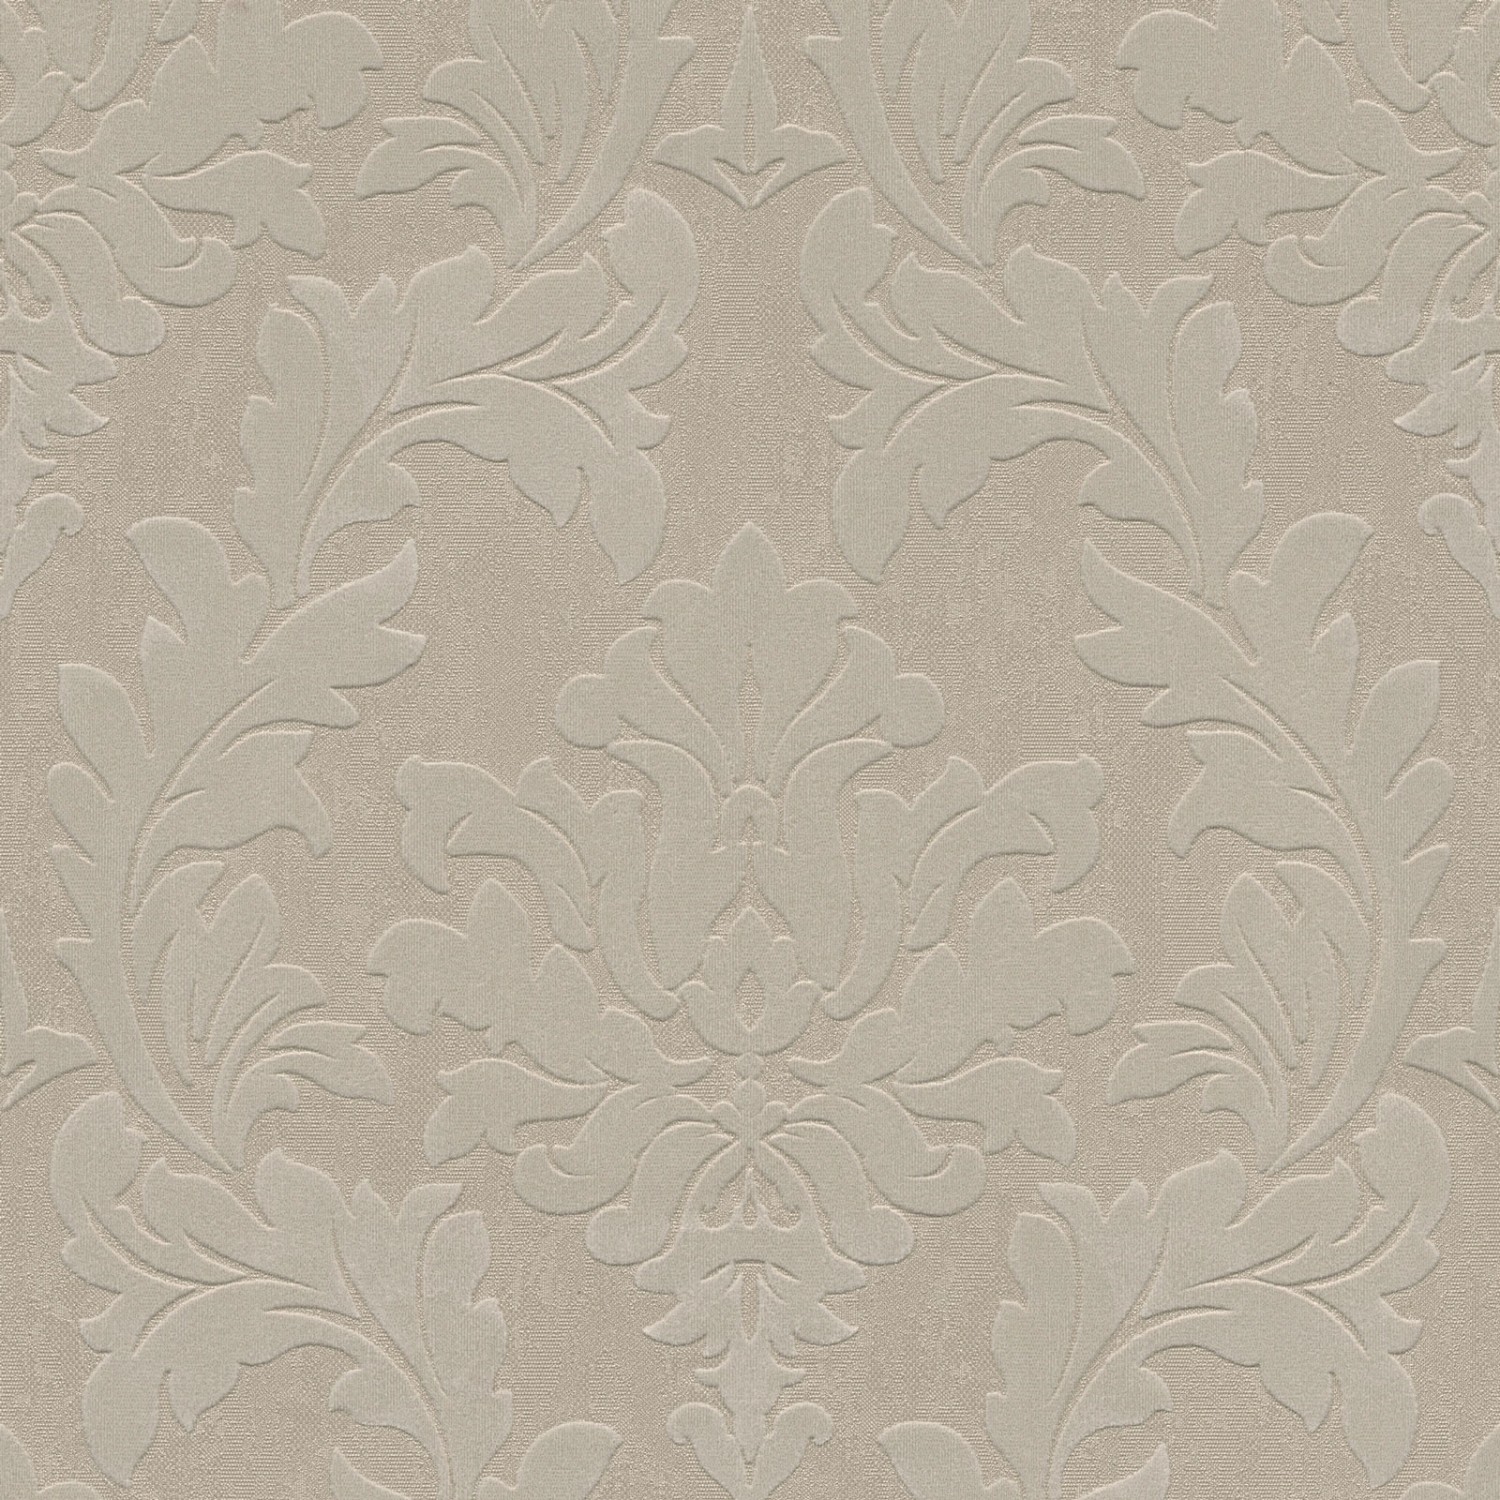 Bricoflor Barock Tapete in Taupe Grau Neobarock Vliestapete mit Samt Ornament auf Vinyl Vlies Barocktapete Elegant Ideal für Wohnzimmer und Esszimmer von Bricoflor